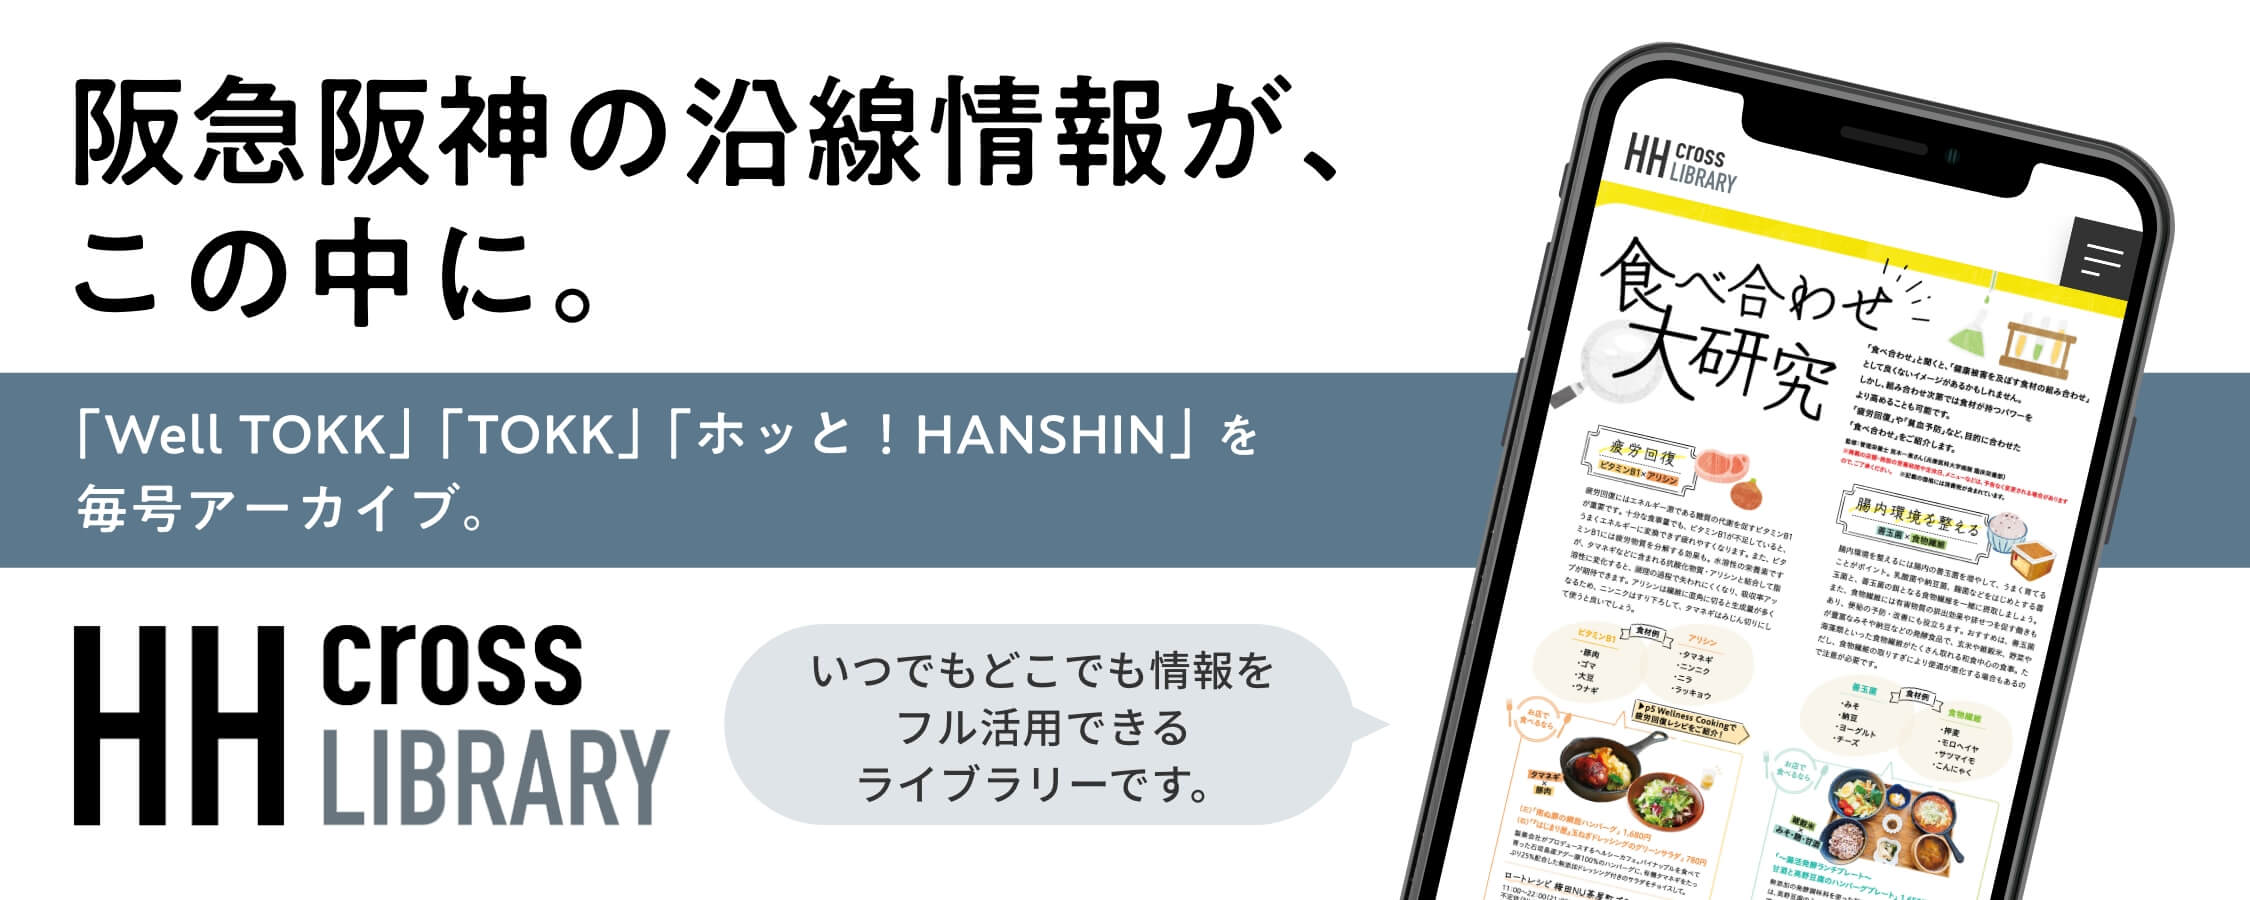 阪急阪神の沿線情報誌が、この中に。HH cross LIBRARY